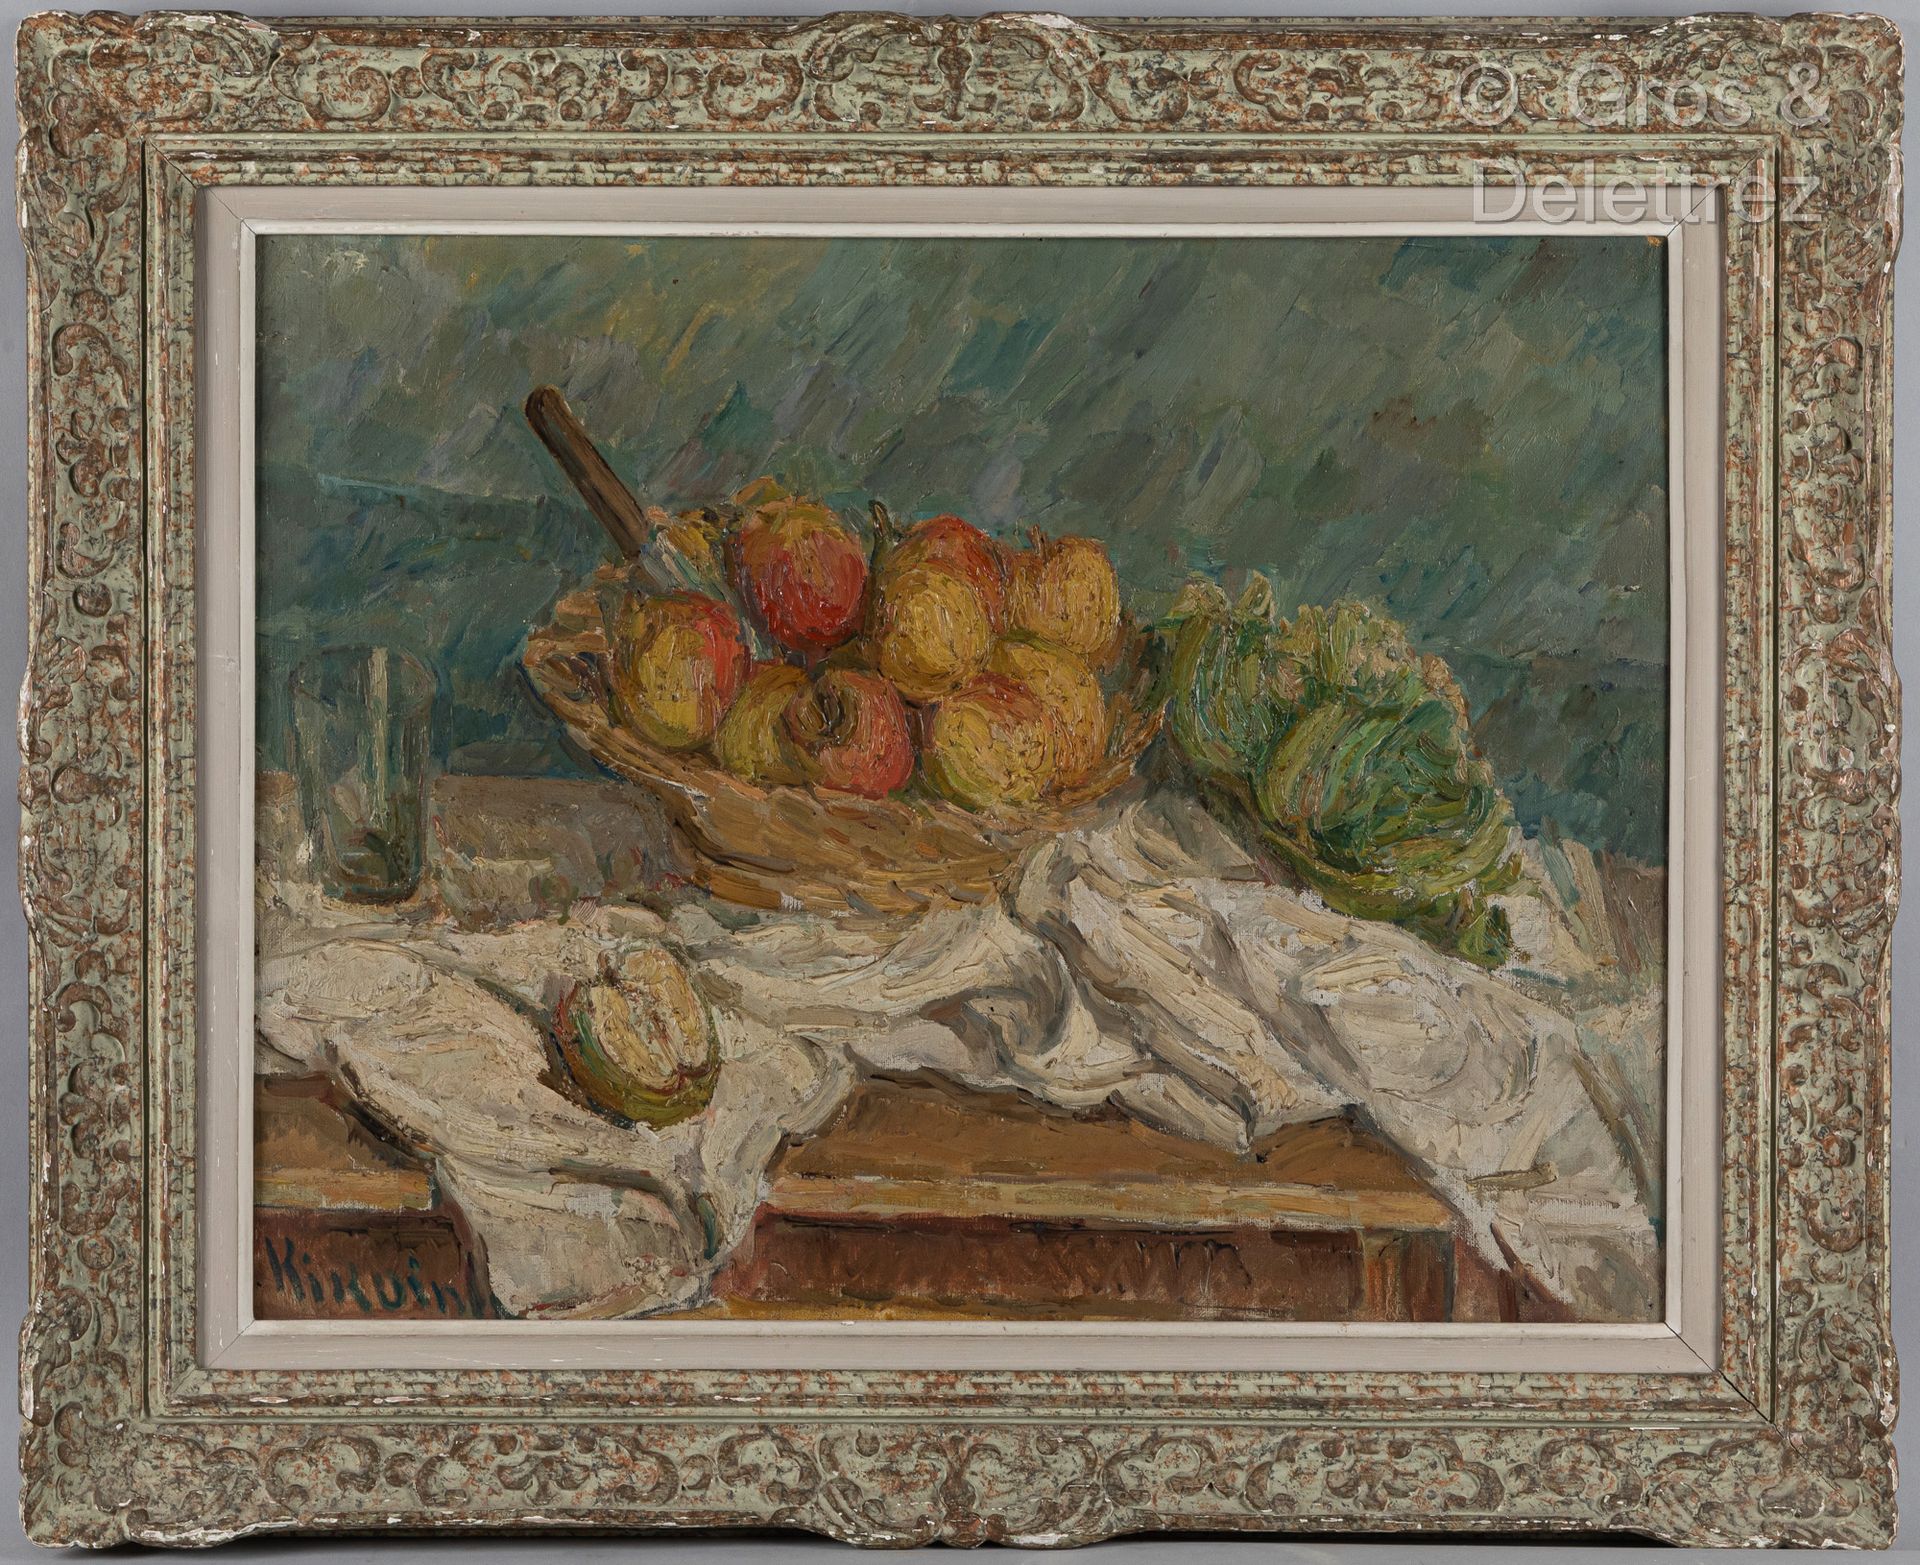 Michel KIKOINE (1892-1968) Stillleben mit Äpfeln, ca. 1930-1935

Öl auf Leinwand&hellip;